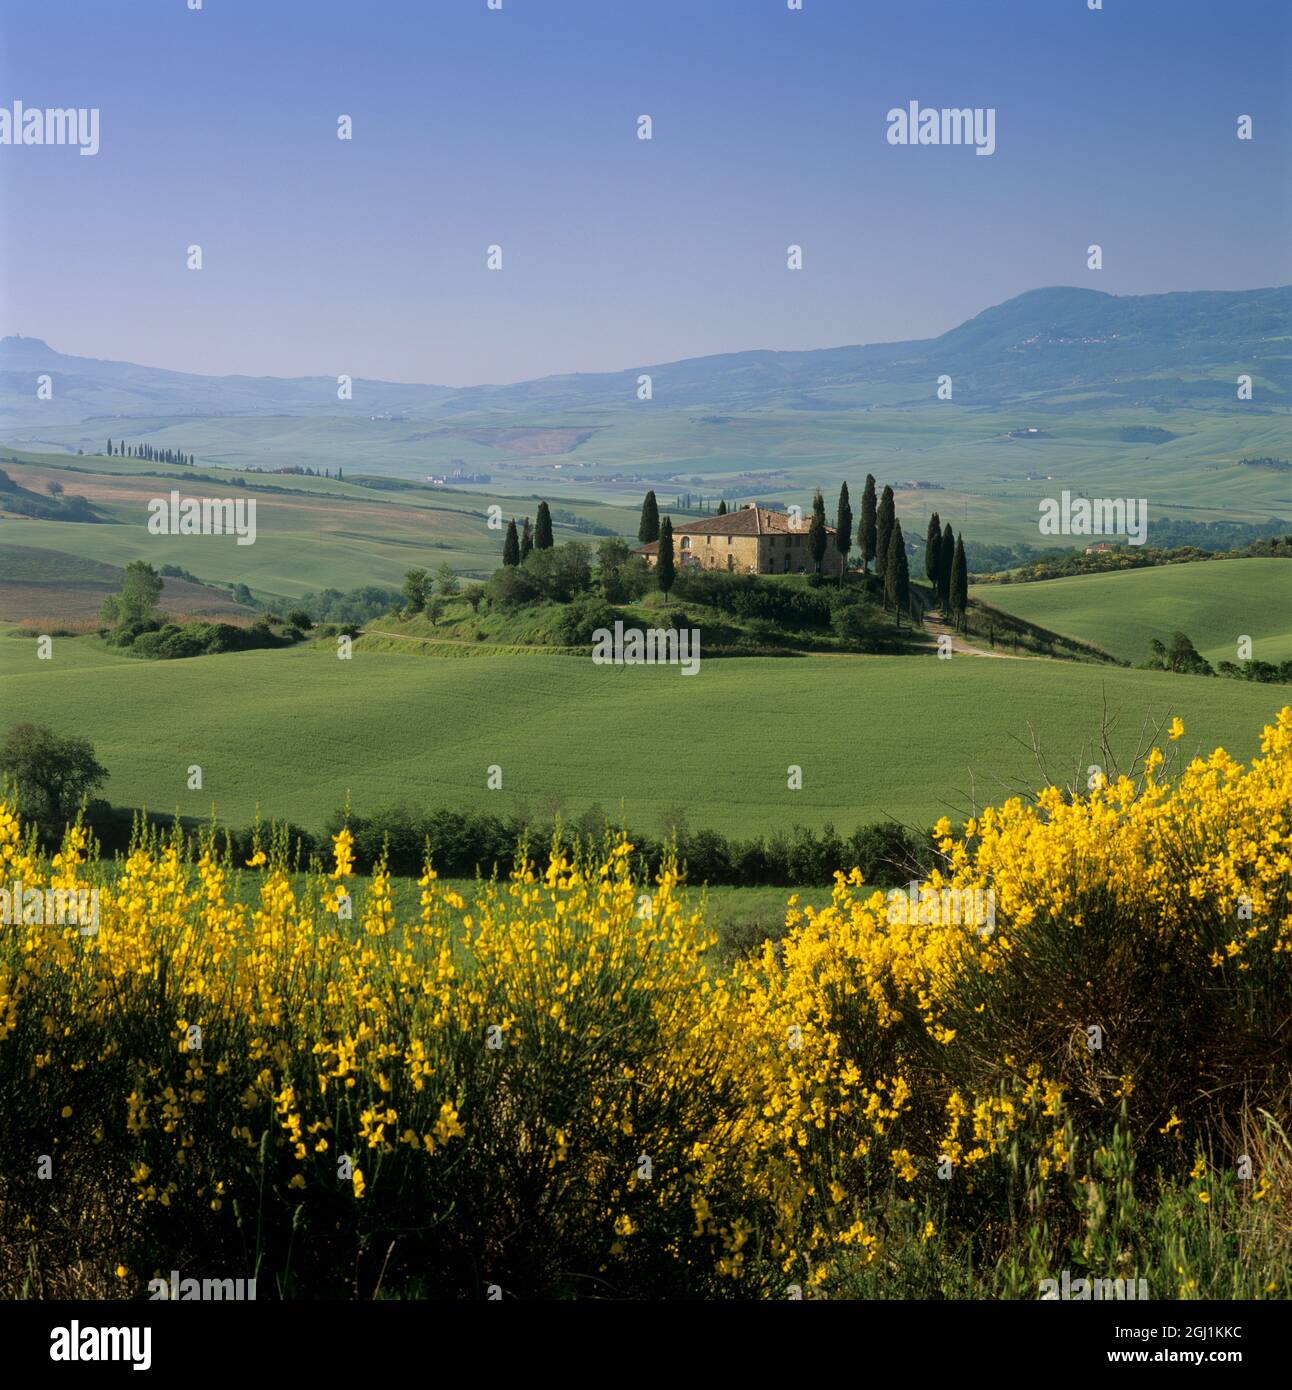 Ferme toscane avec cyprès et paysage de printemps, San Quirico d'Orcia, province de Sienne, Toscane, Italie, Europe Banque D'Images